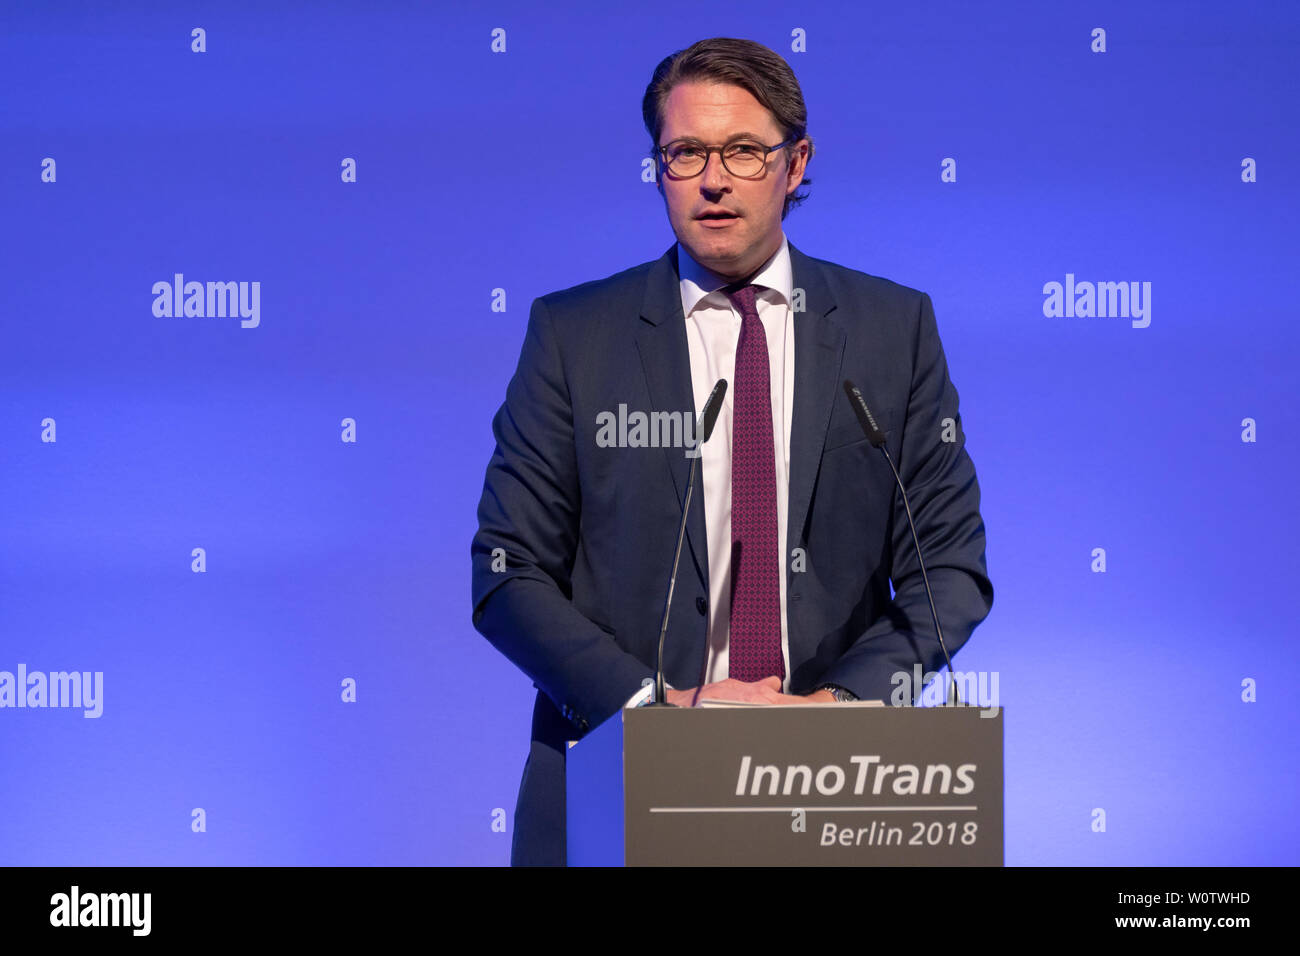 InnoTrans 2018 - Ceremonia de Apertura - Andreas Scheuer, Bundesminister für Verkehr und digitale Infrastruktur Foto de stock